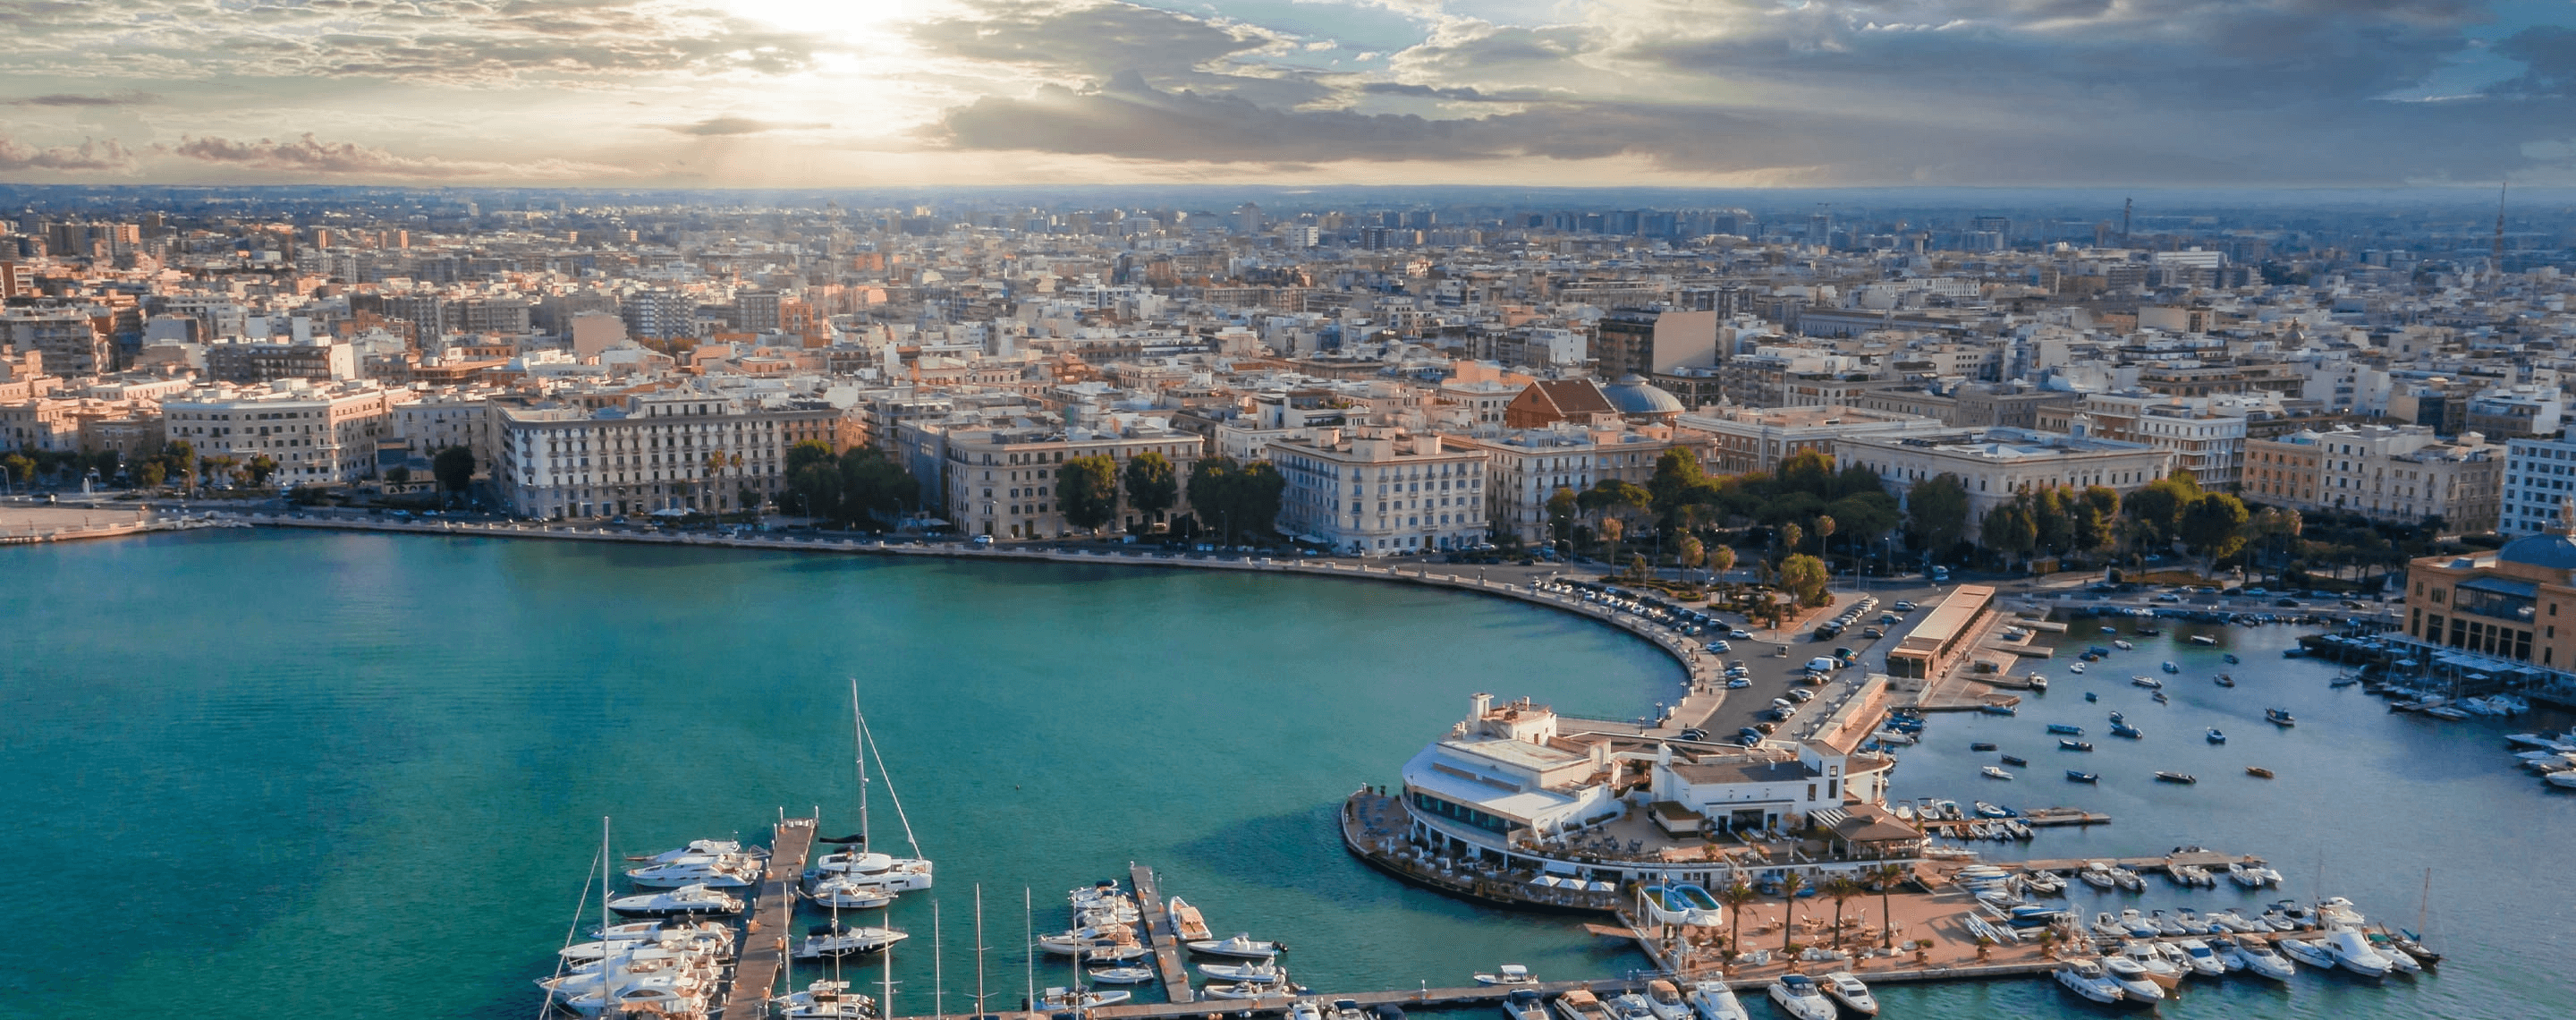 Luftbild vom Hafen Bari, Italien